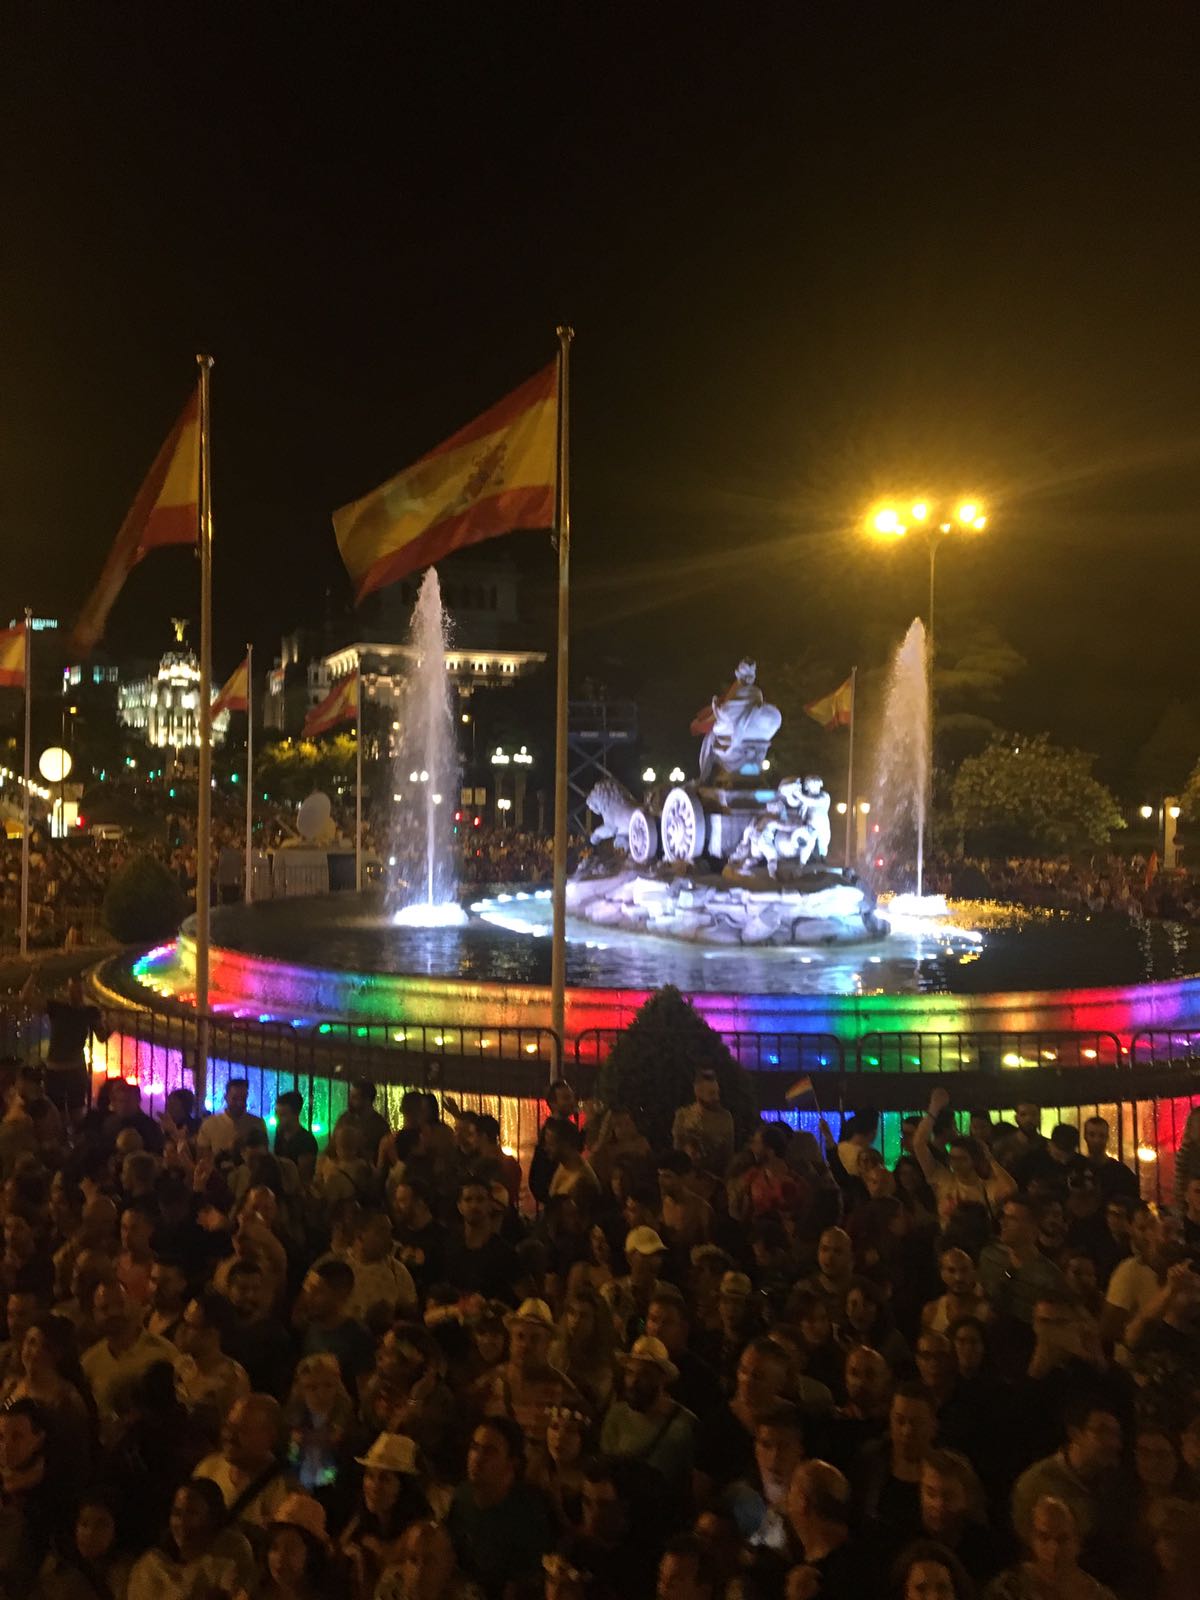 Los mejores momentos del WorldPride Madrid 2017